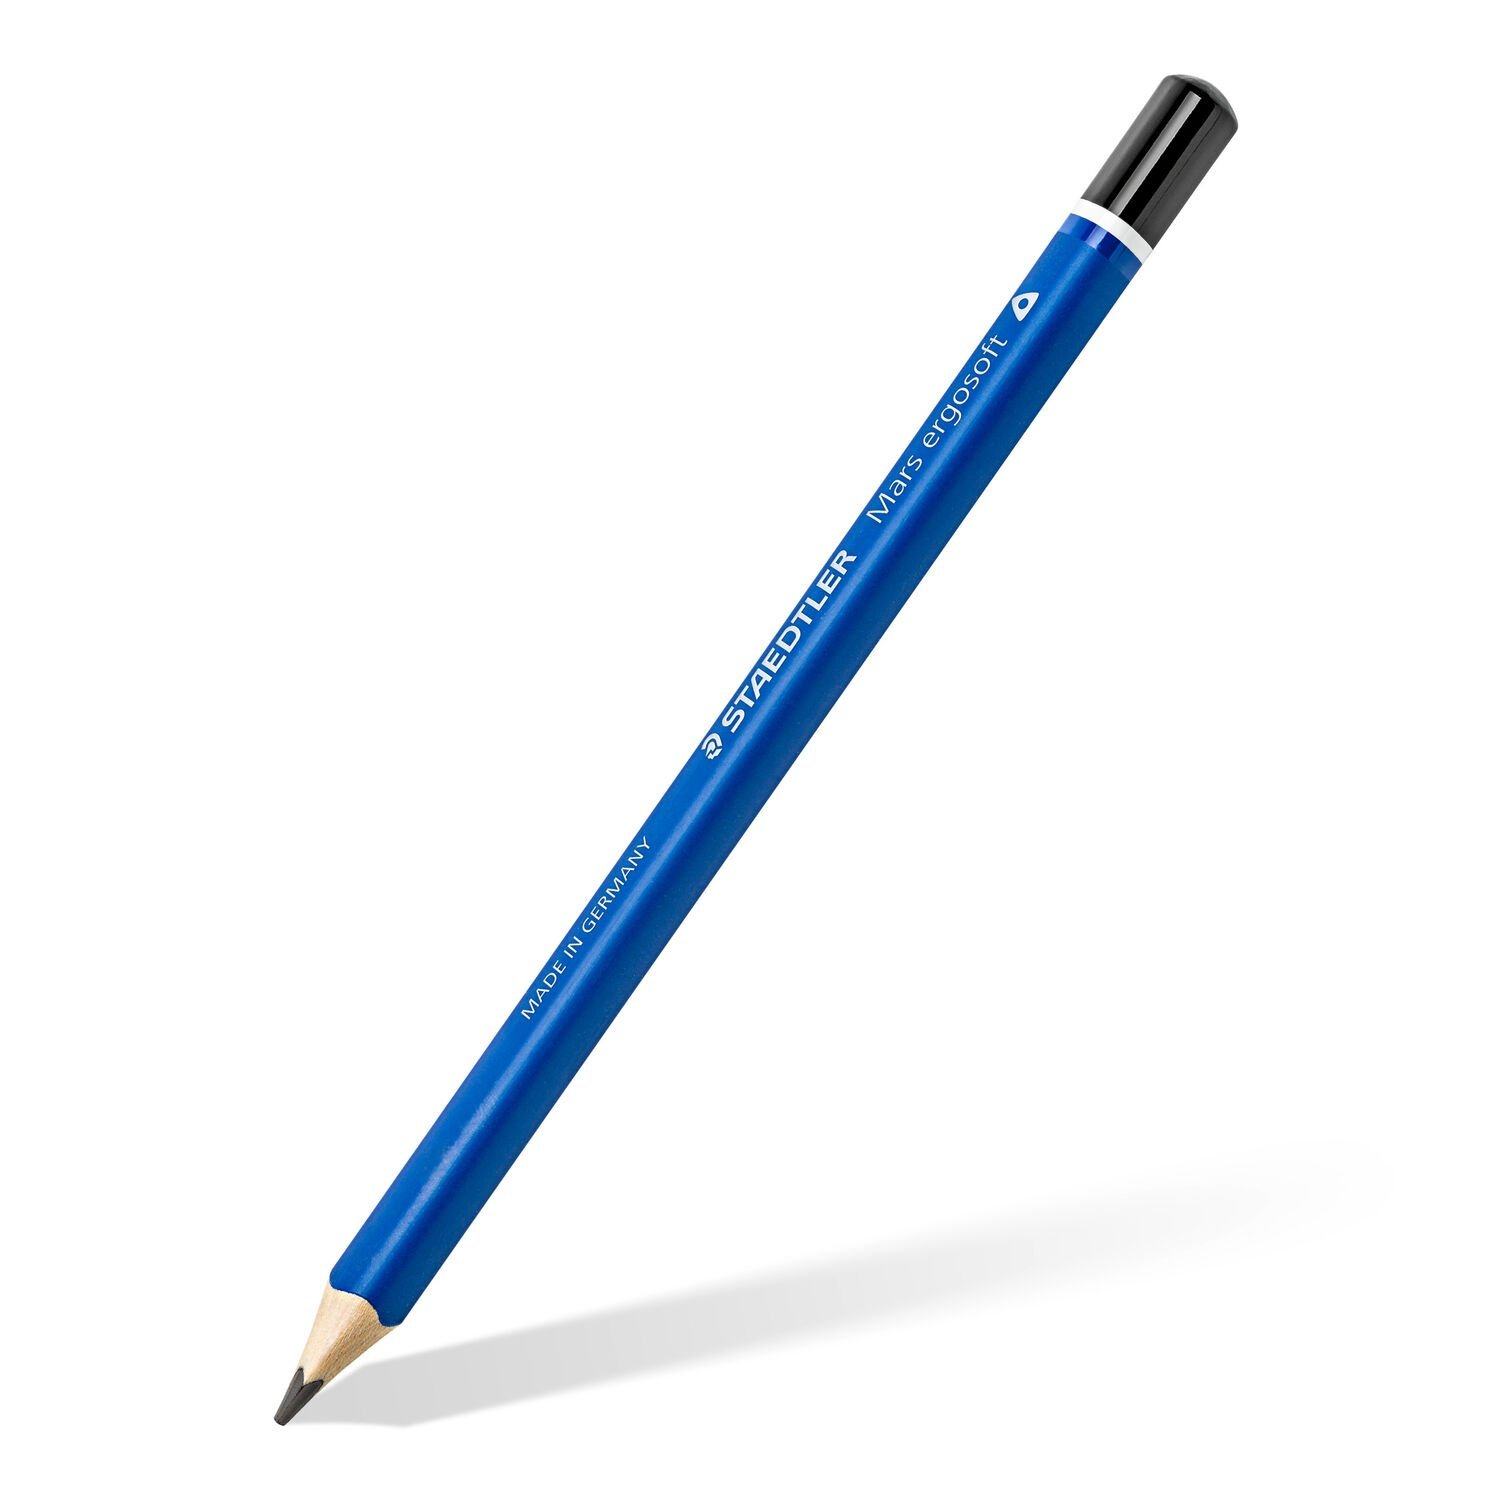 Mars® ergosoft® 151 - Jumbo graphite pencil